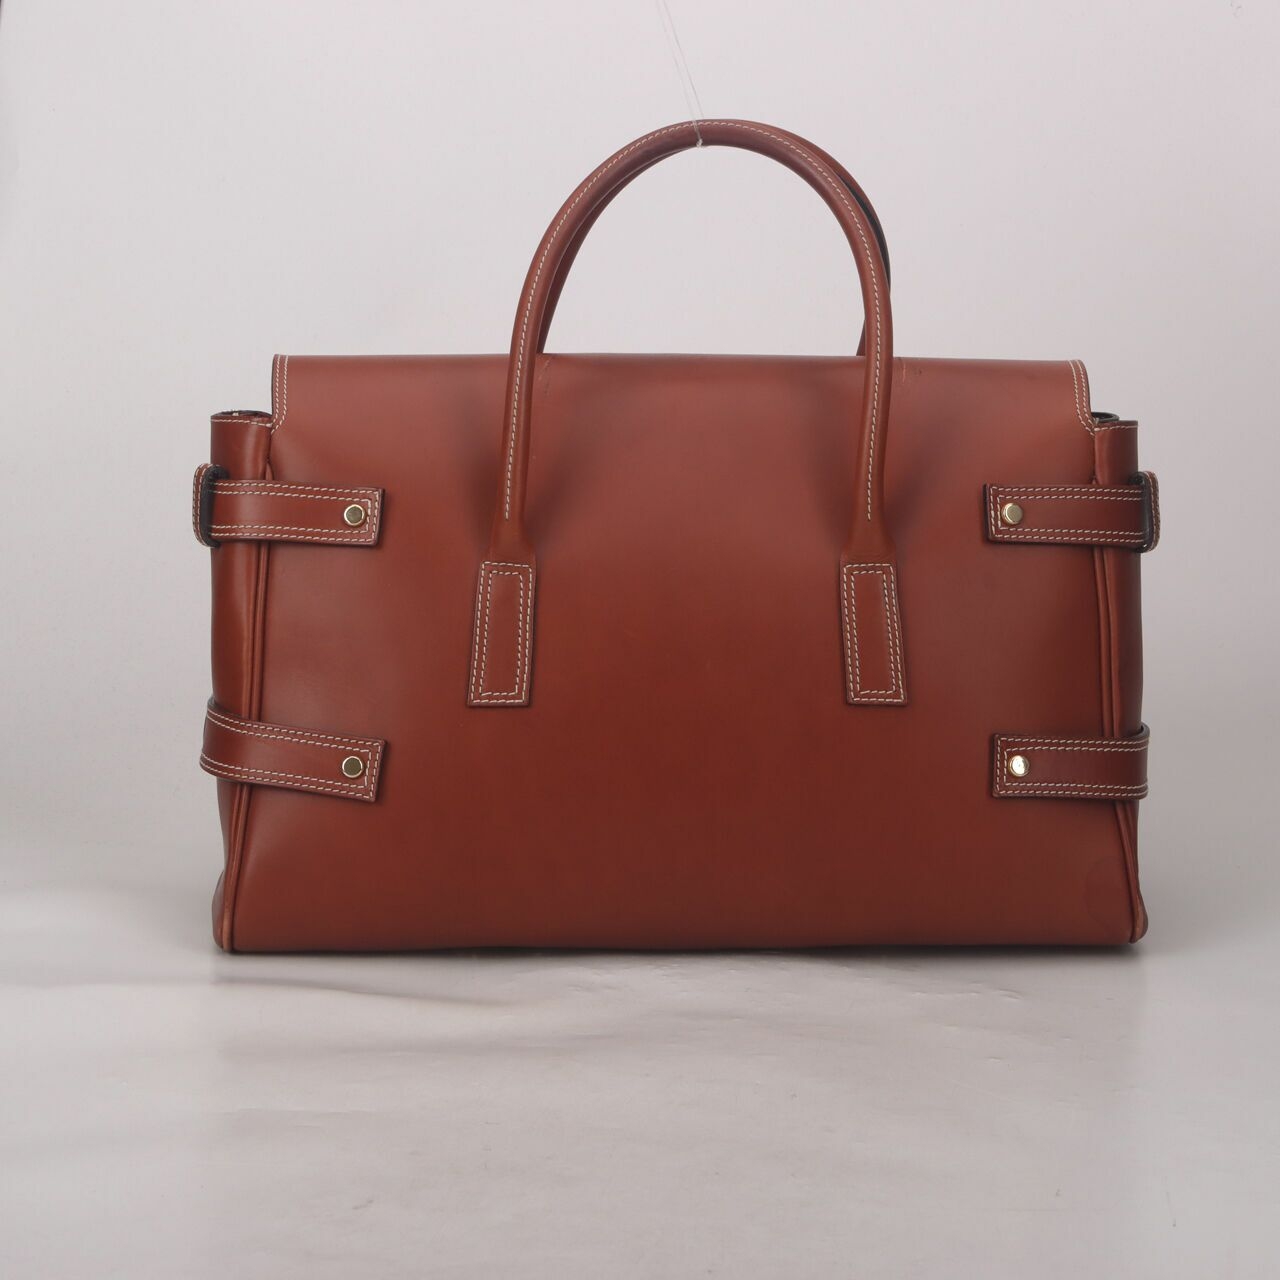 Luella Brown Handbag